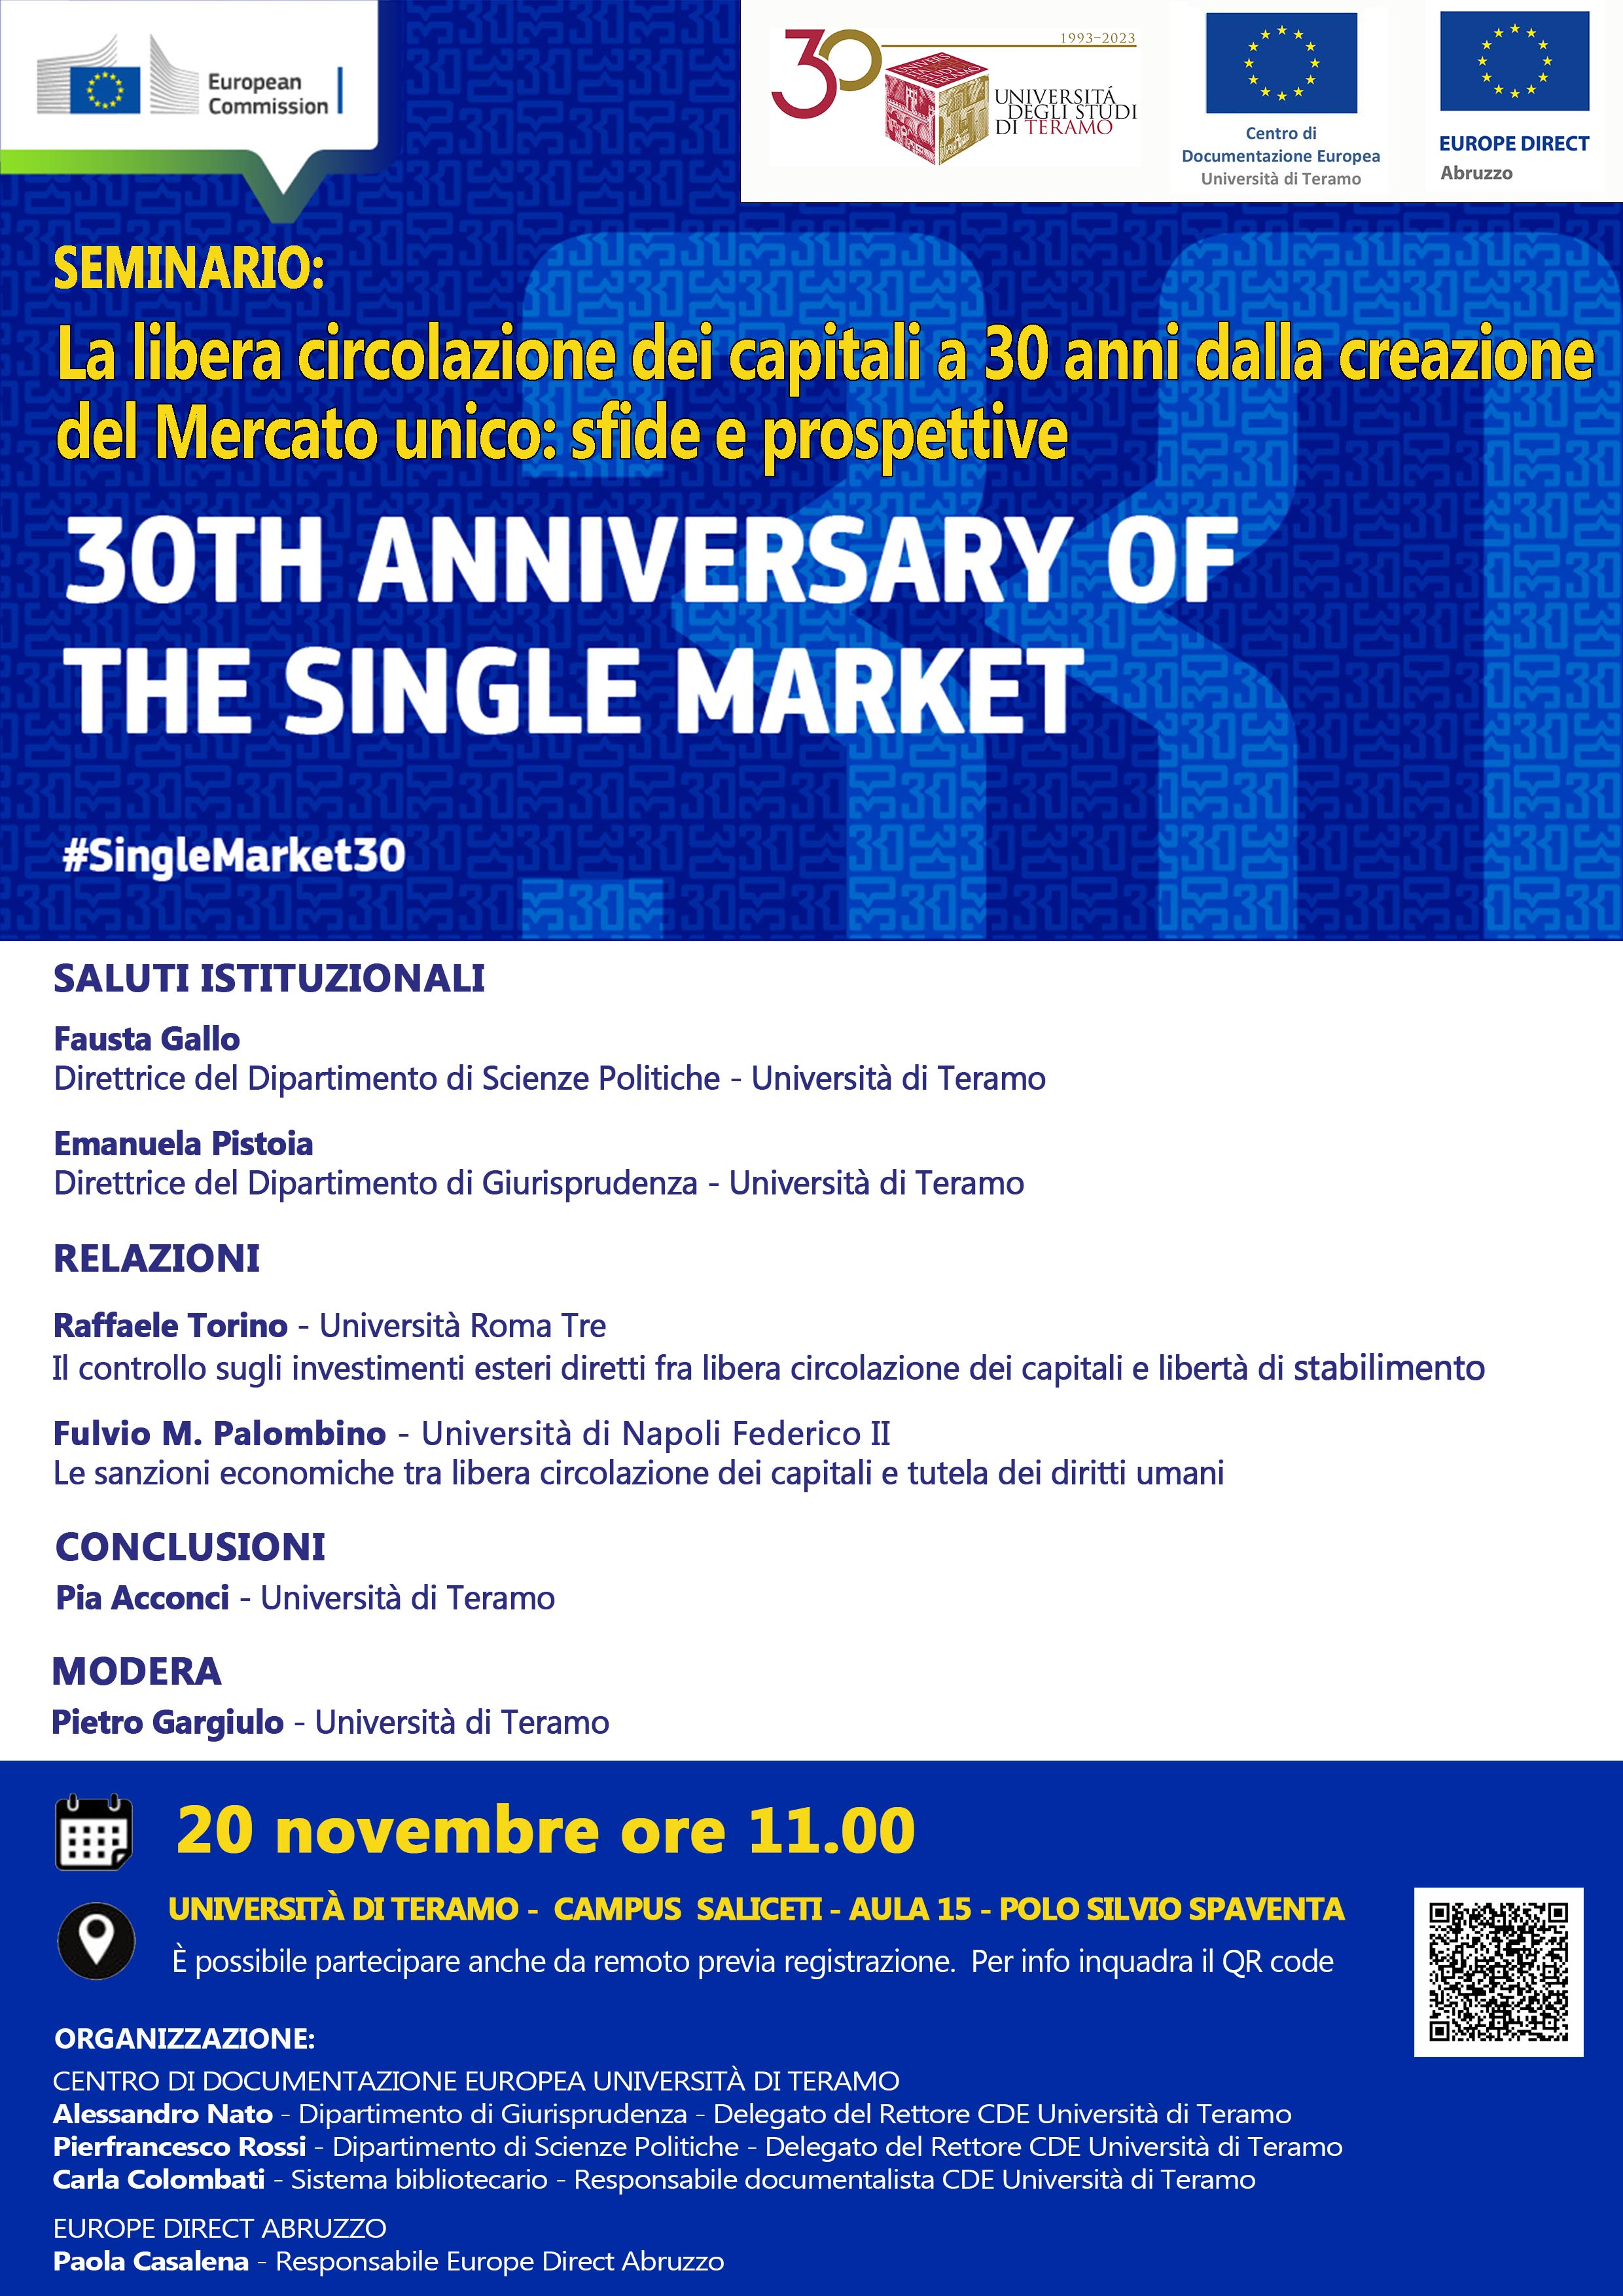 Seminario "La libera circolazione dei capitali a 30 anni dalla creazione del Mercato unico" 